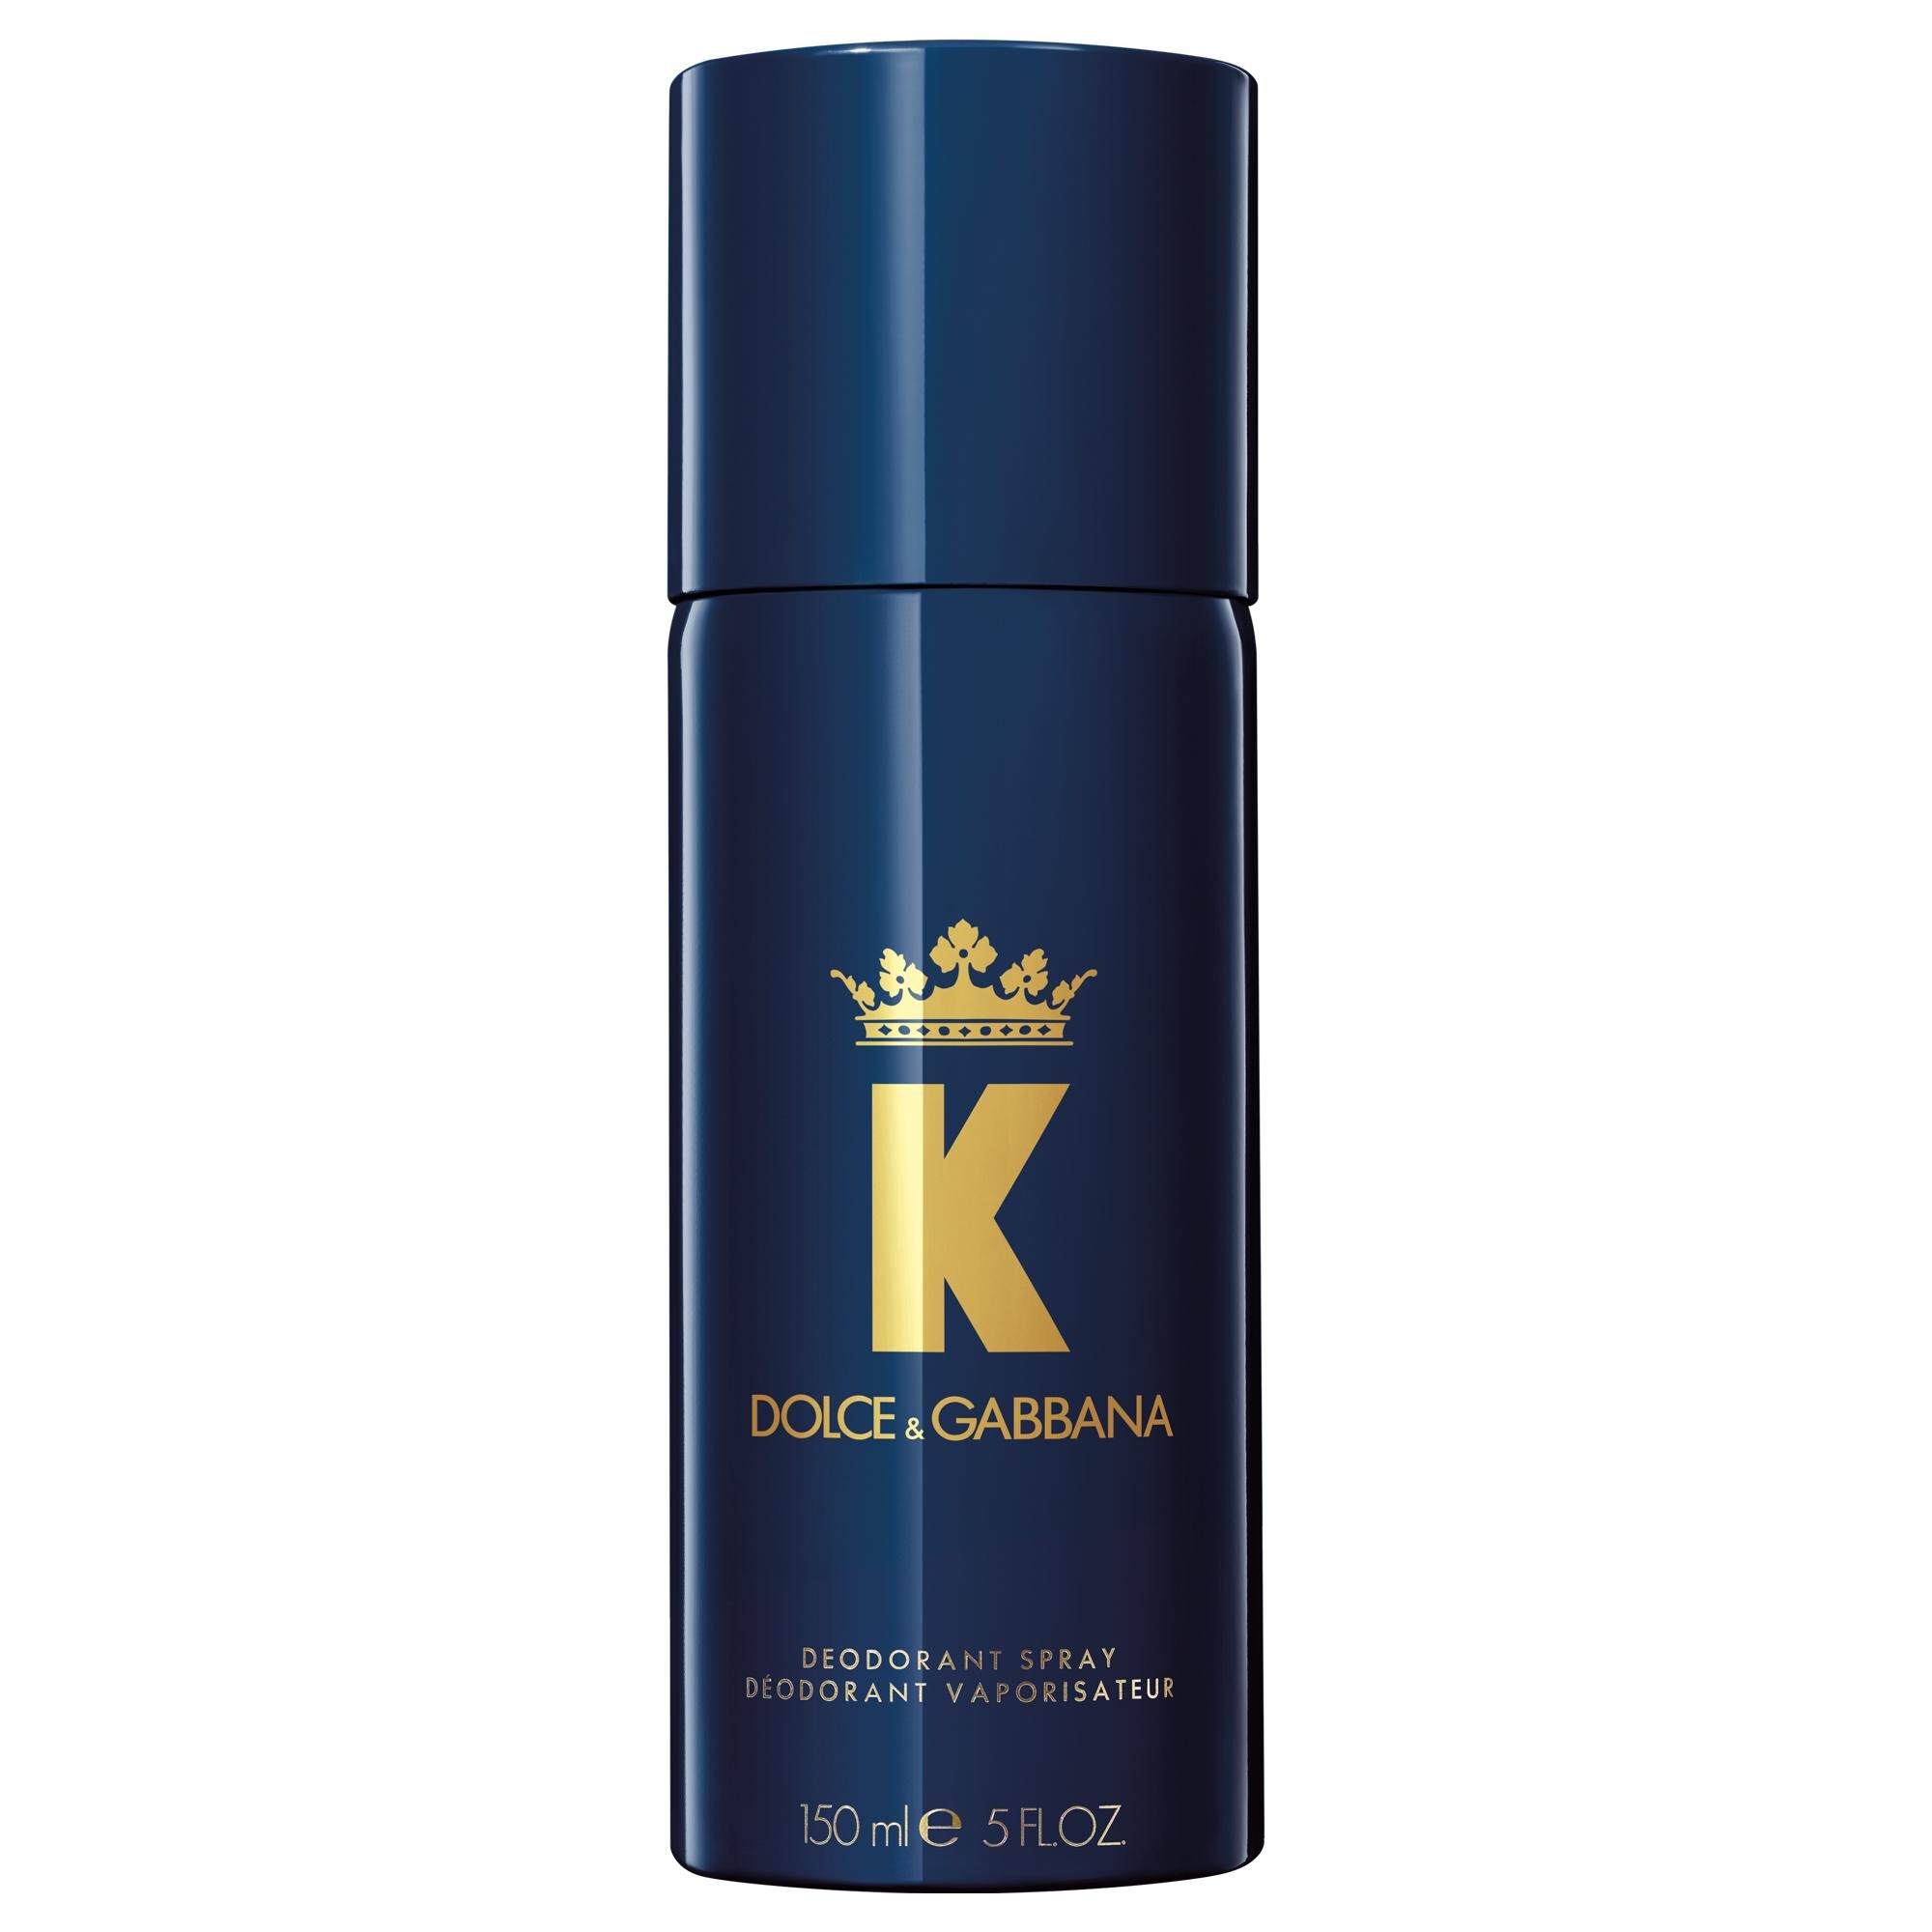 Deodorant Dolce und Gabbana K by Dolce 150ml kaufen